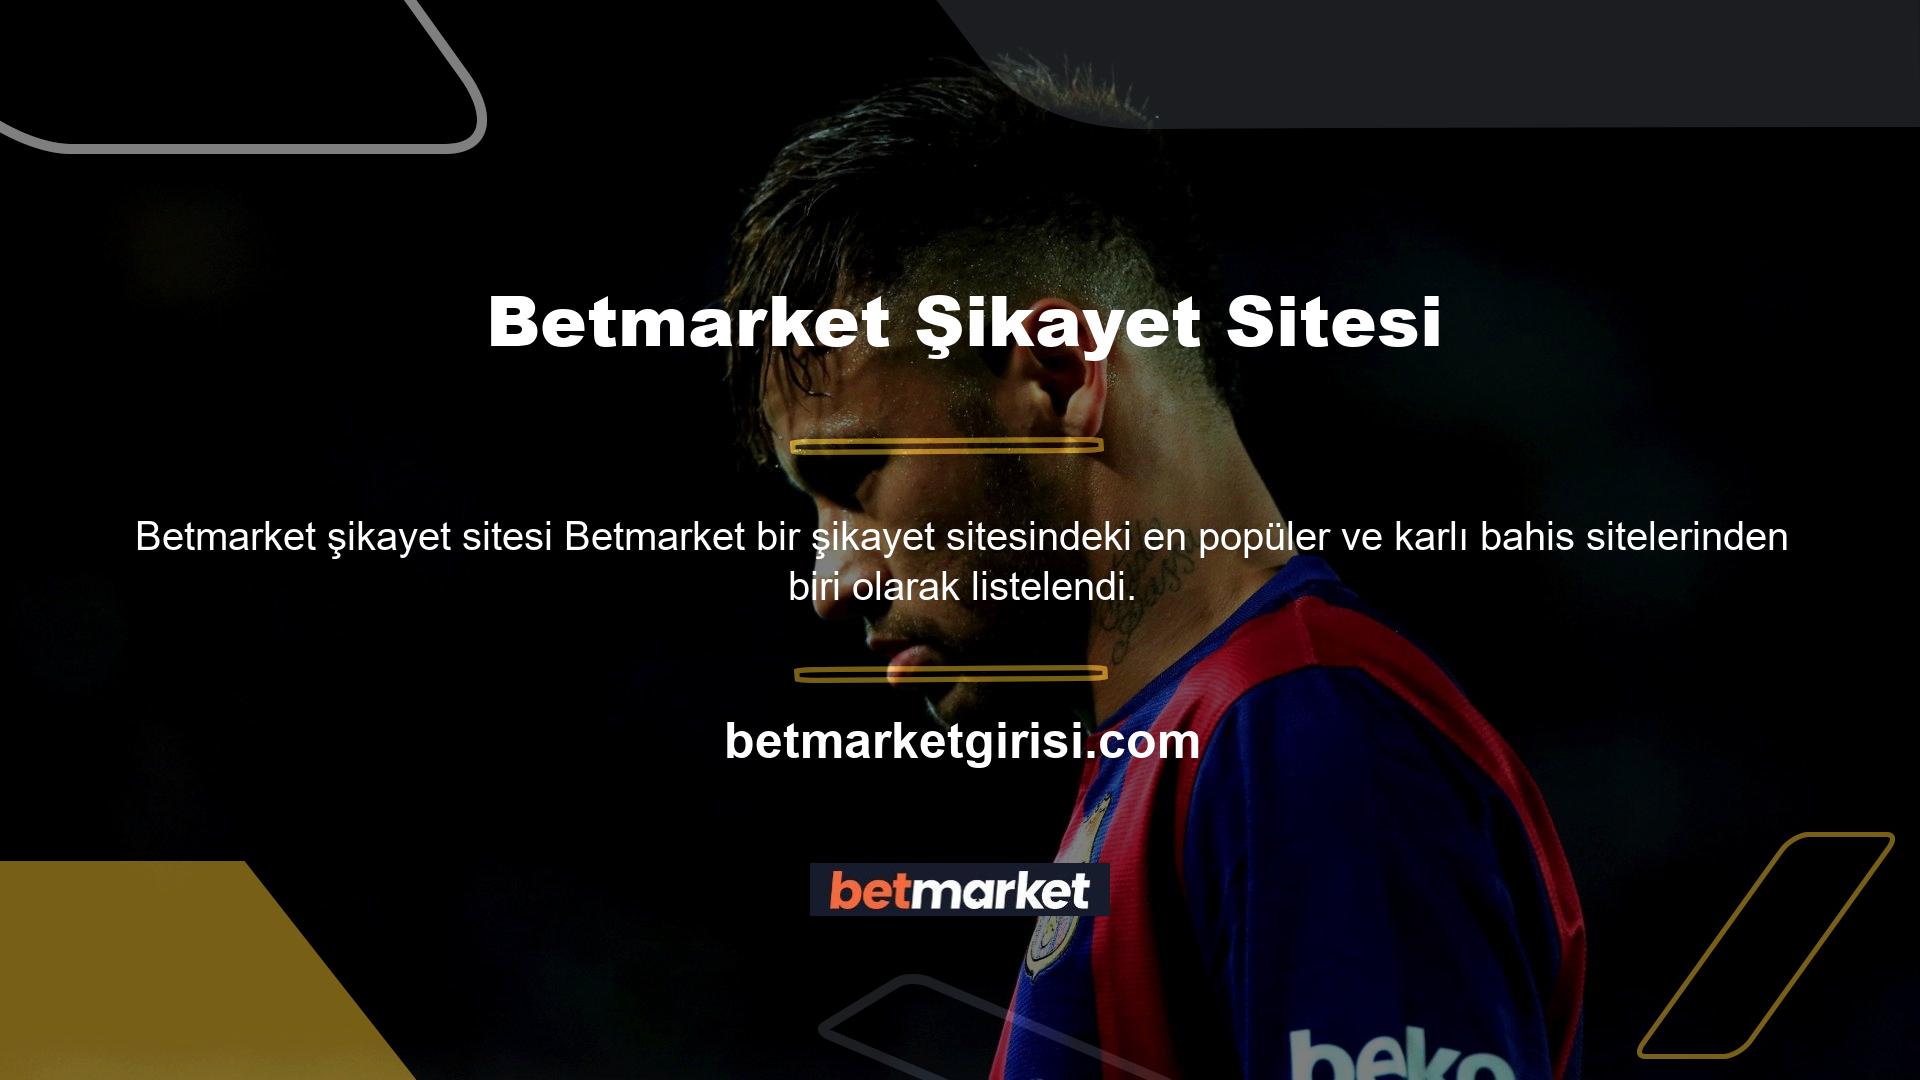 Betmarket, artan kullanıcı sayısına rağmen son zamanların en hoşnutsuz web sitelerinden biri haline geldi